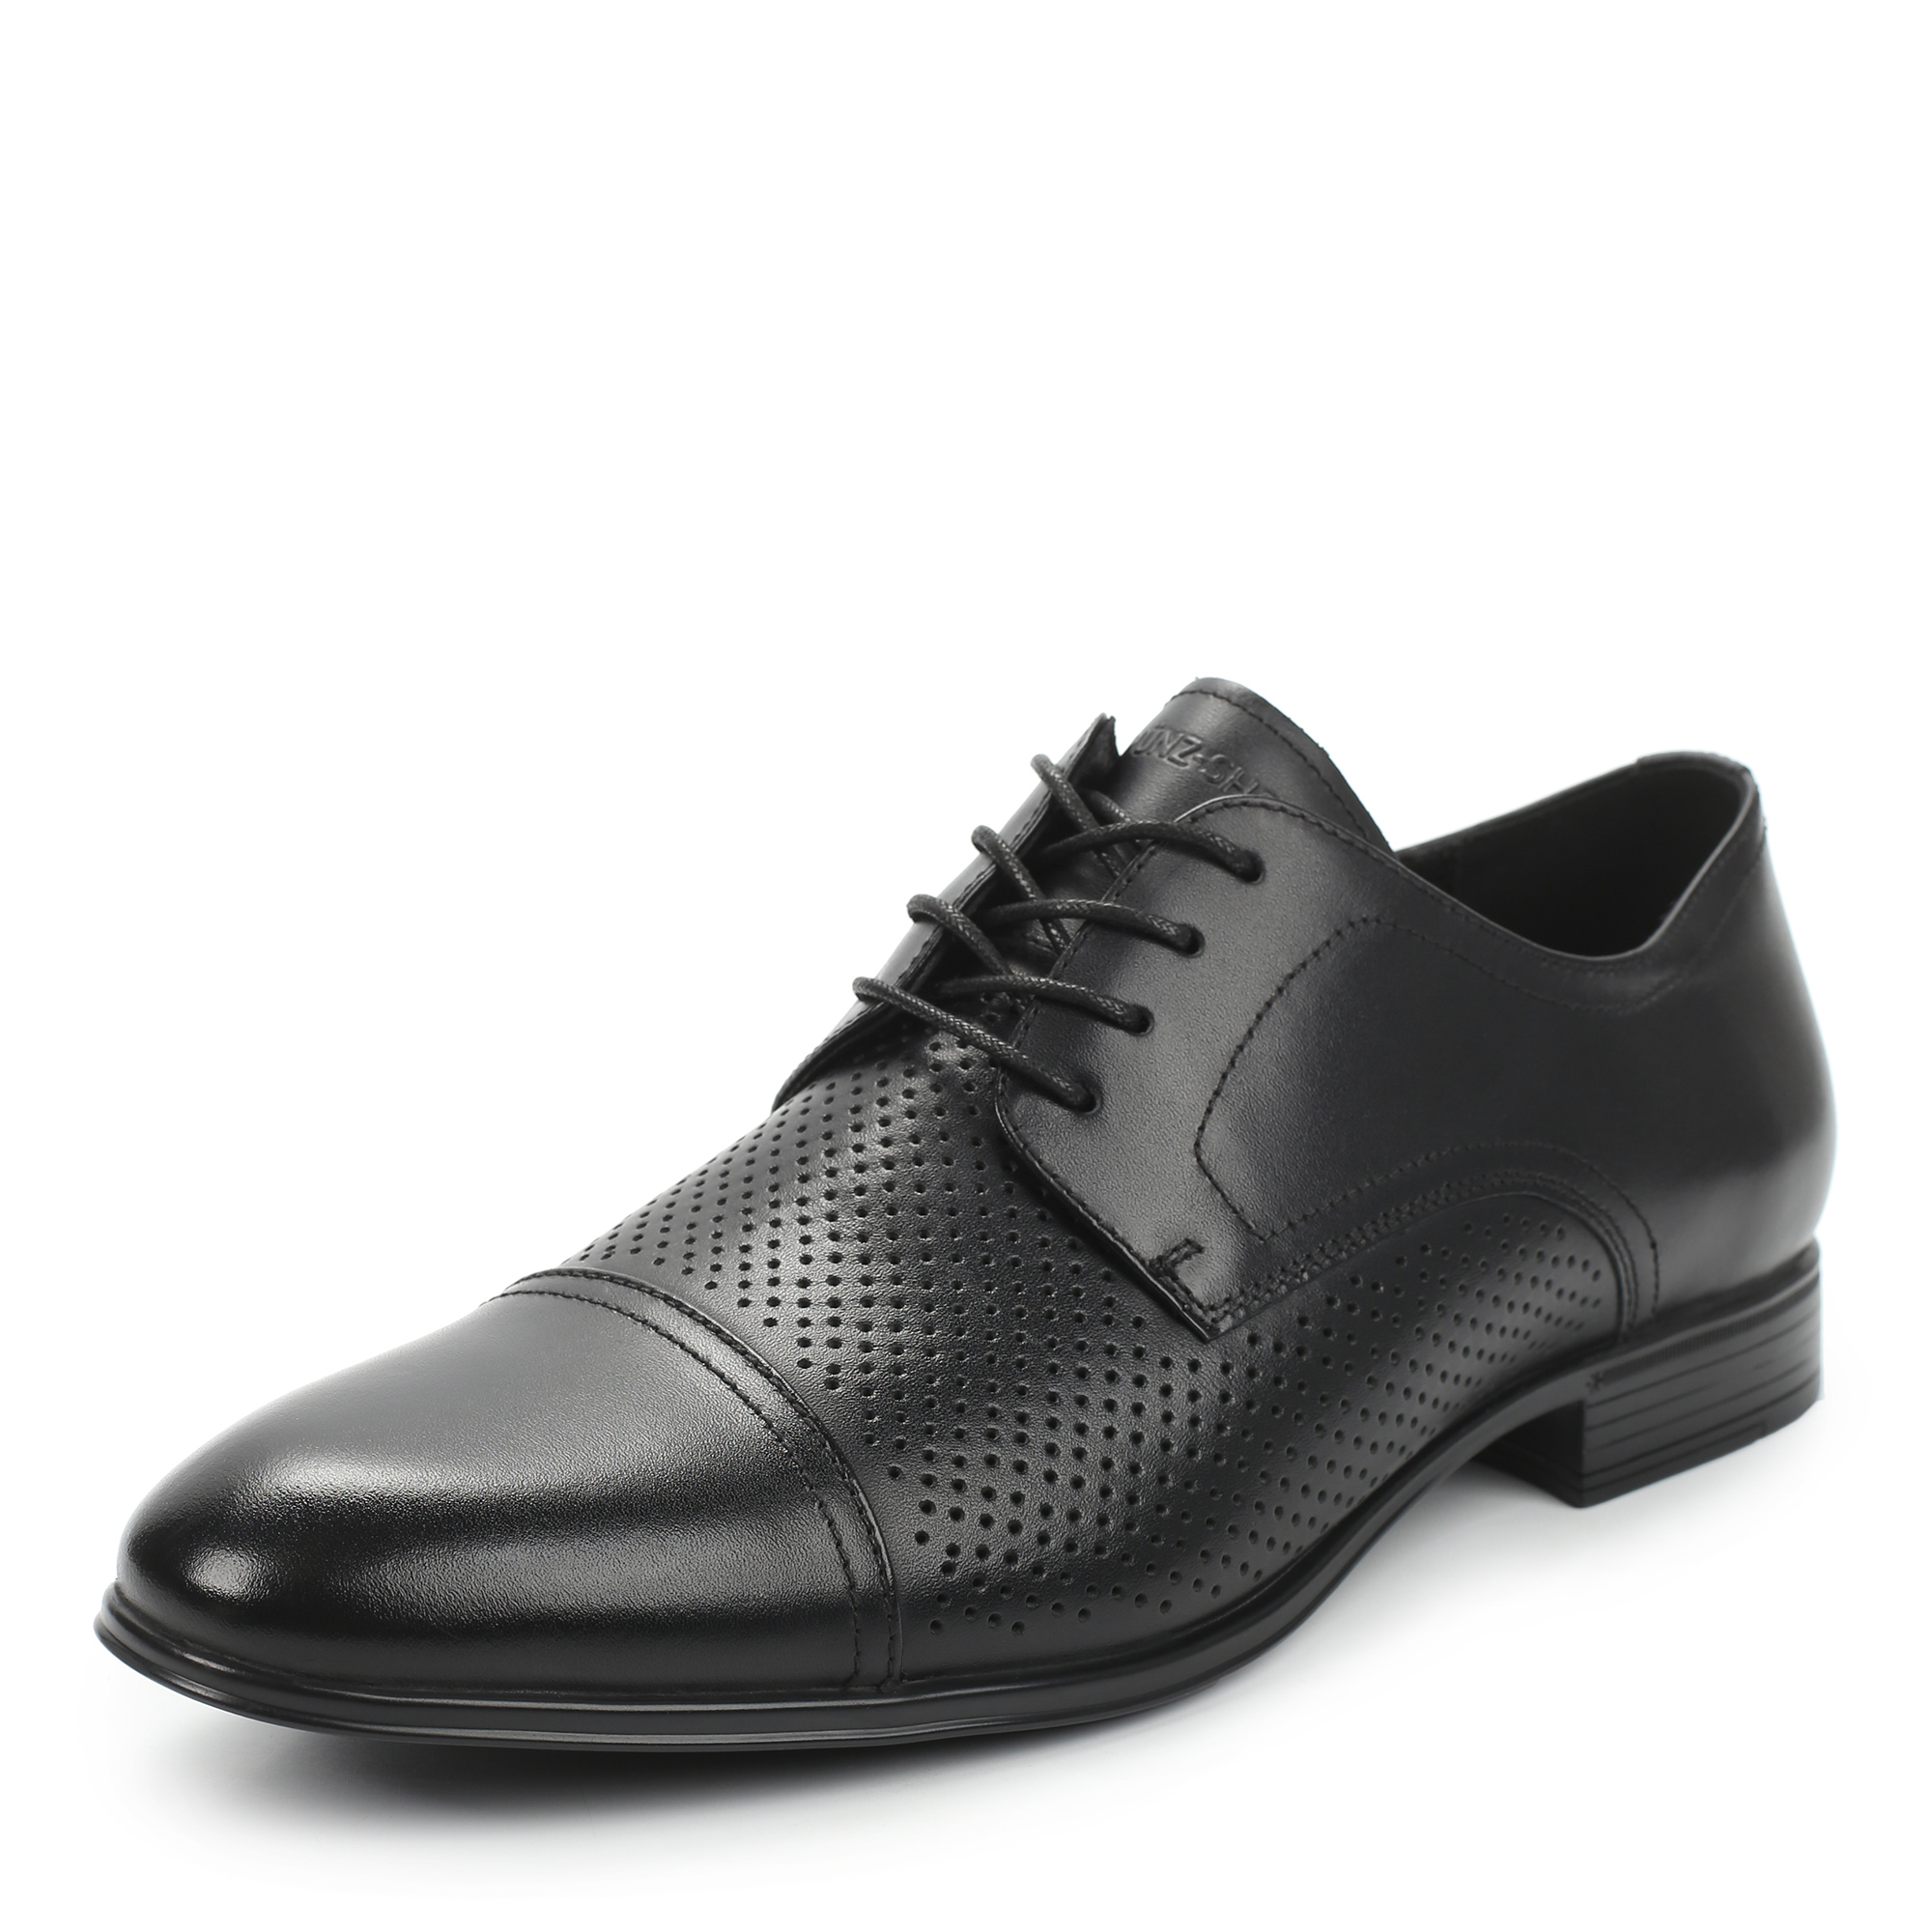 Туфли MUNZ Shoes 104-072E-11002 104-072E-11002, цвет черный, размер 45 полуботинки - фото 2